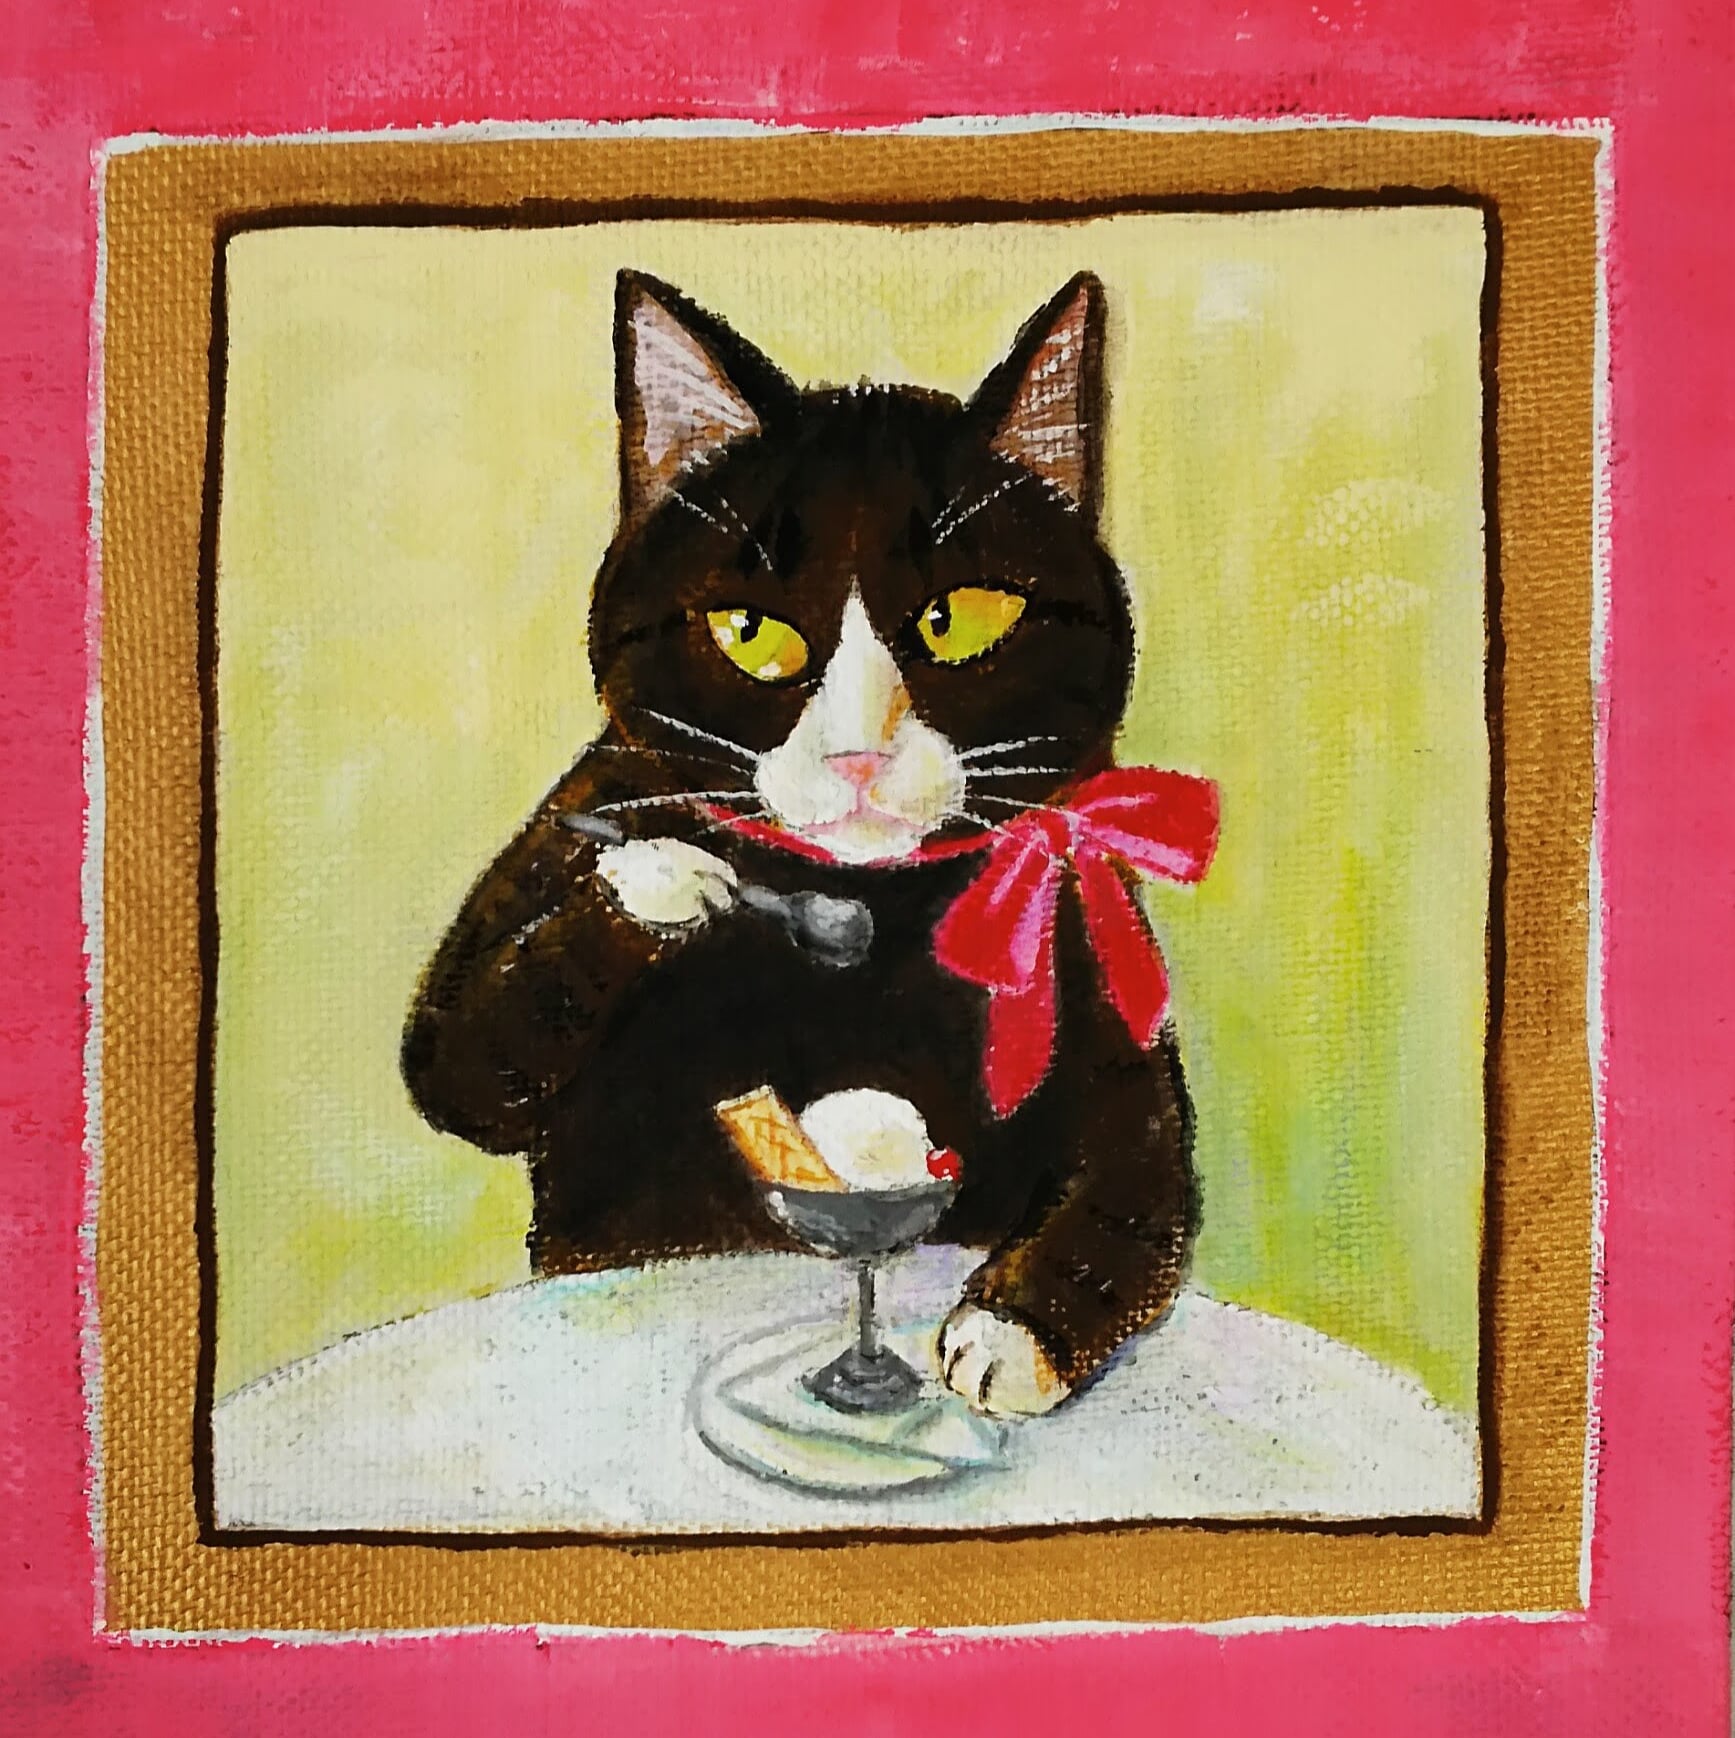 しっぽアート のまひろこ 暖かくなるとアイスクリーム食べたくなるの バニラが好き ウエハスは後から食べるの アクリル画 猫の絵 アイスクリーム 猫 動物 絵画 イラスト バニラ T Co Qrlxkkg35d Twitter